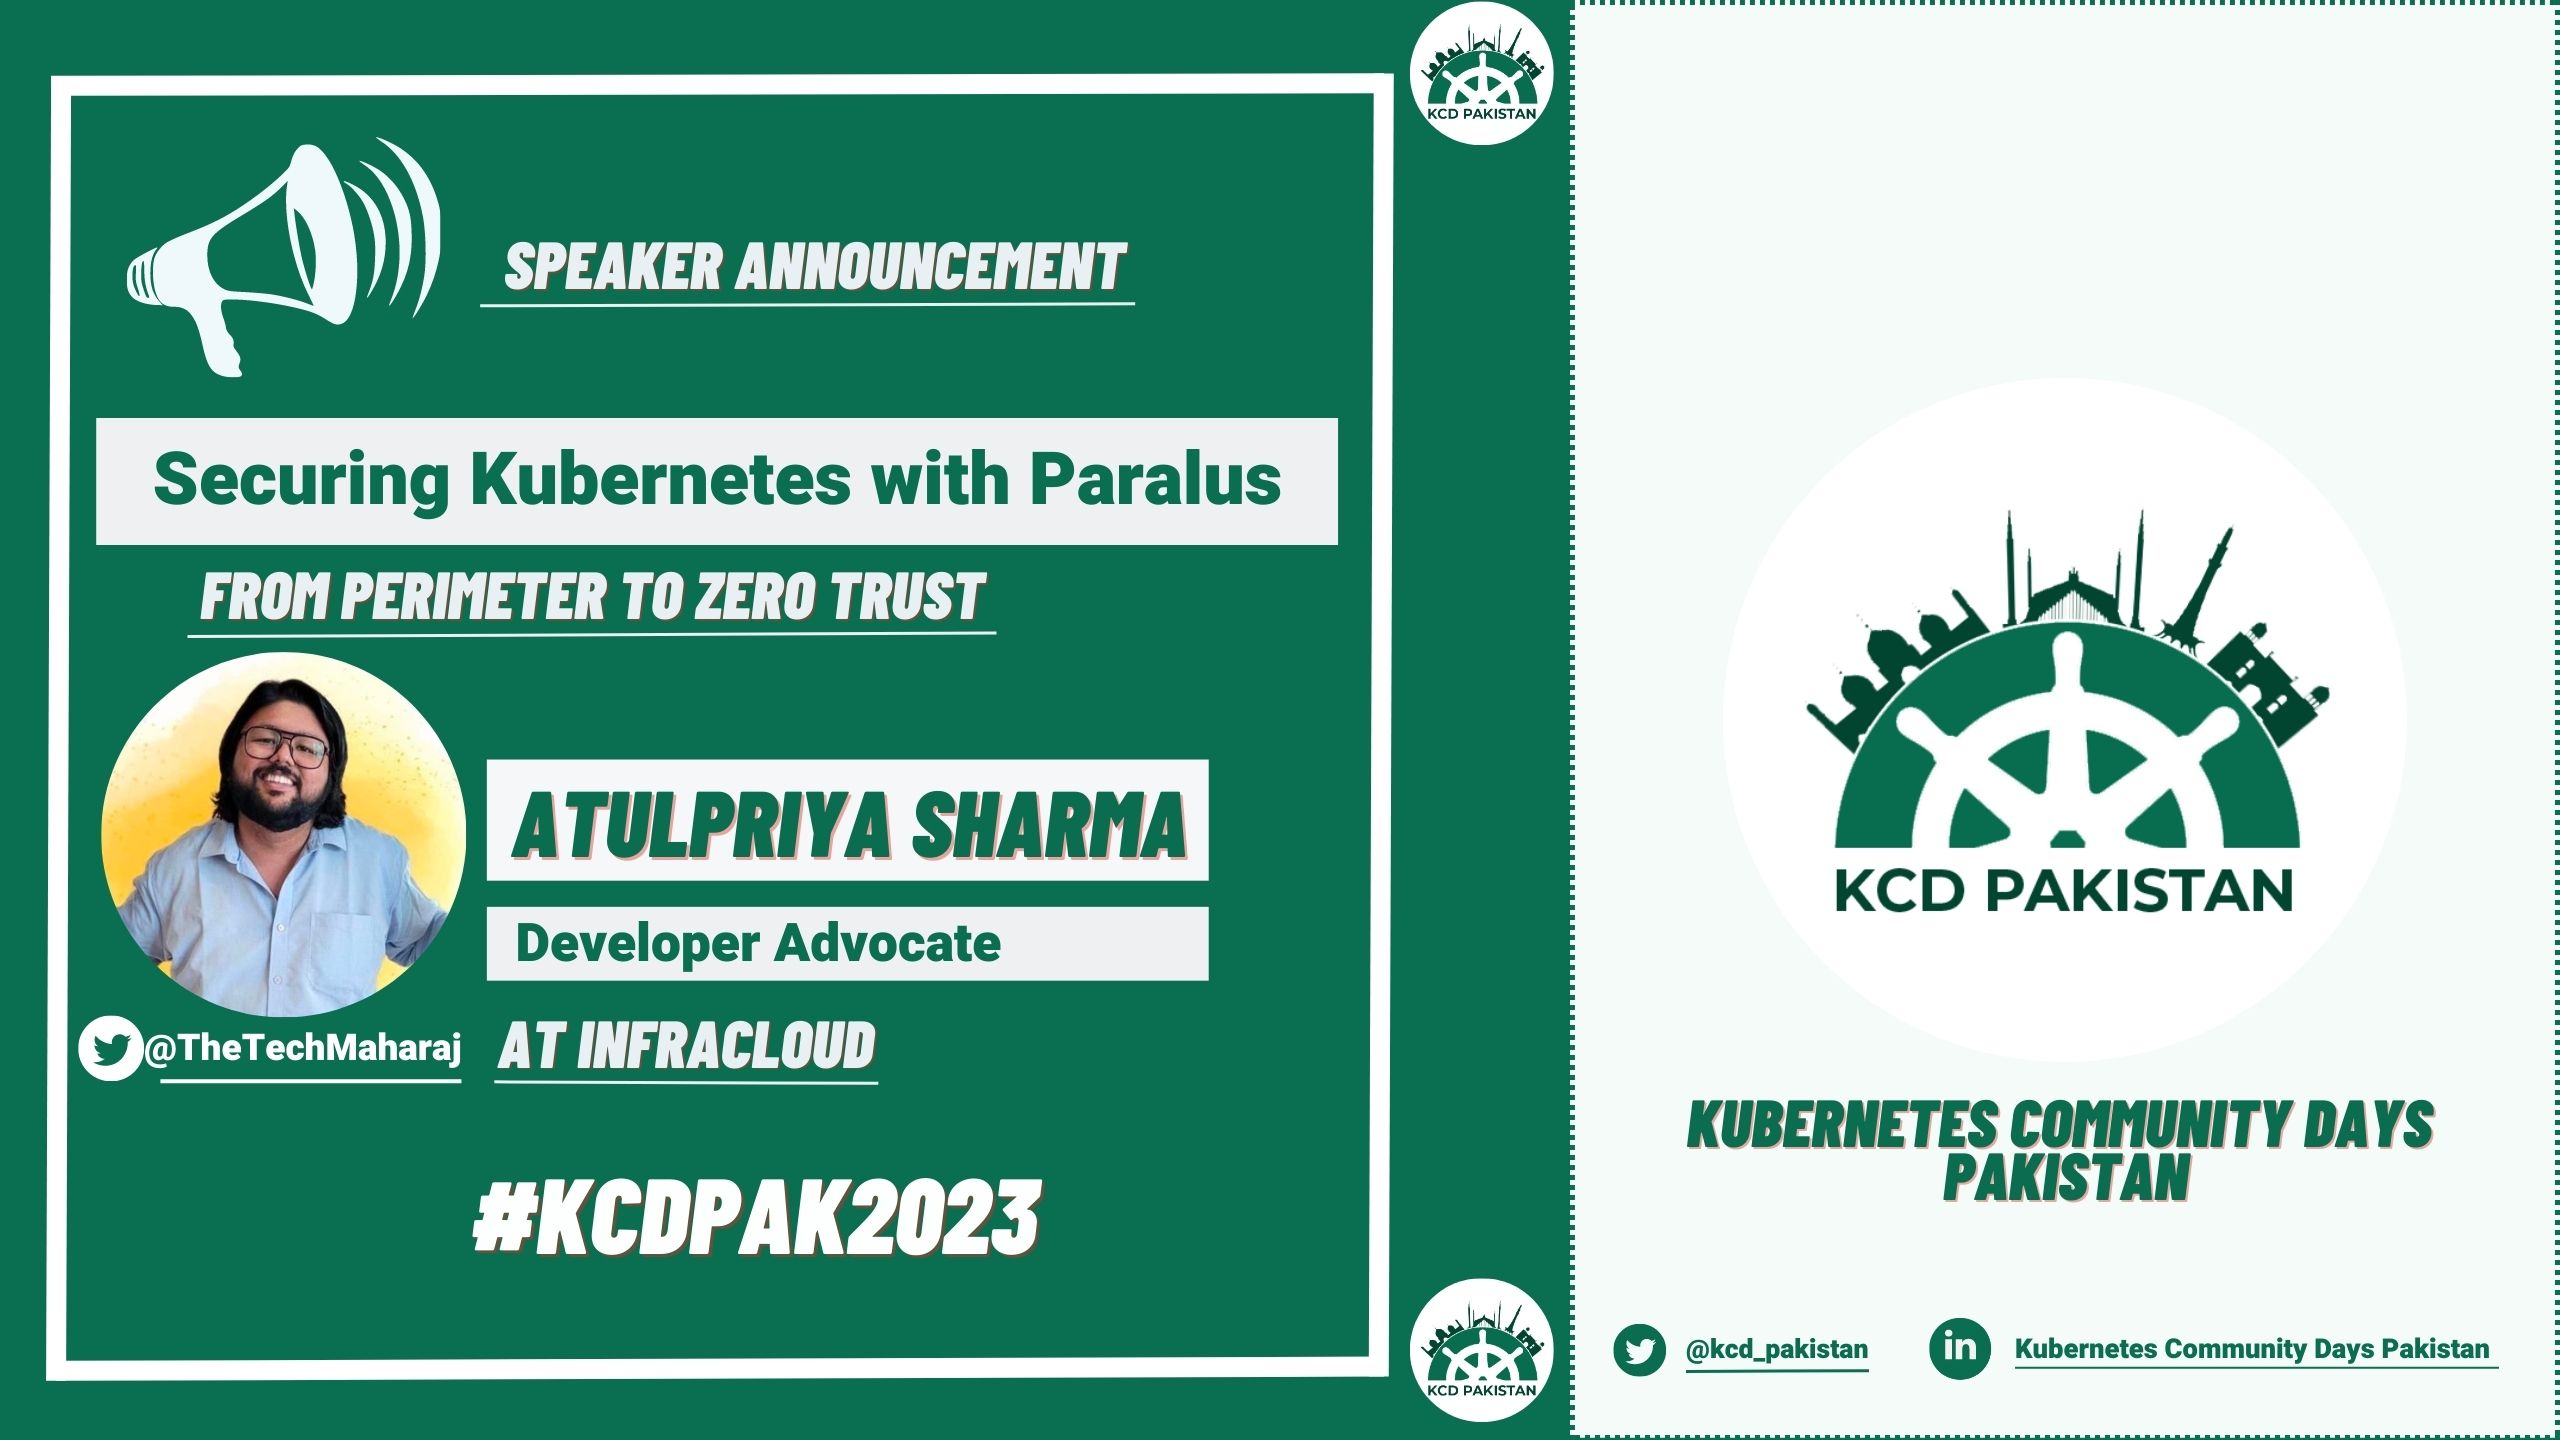 Atulpriya Sharma talks about Paralus at KCD Pakistan